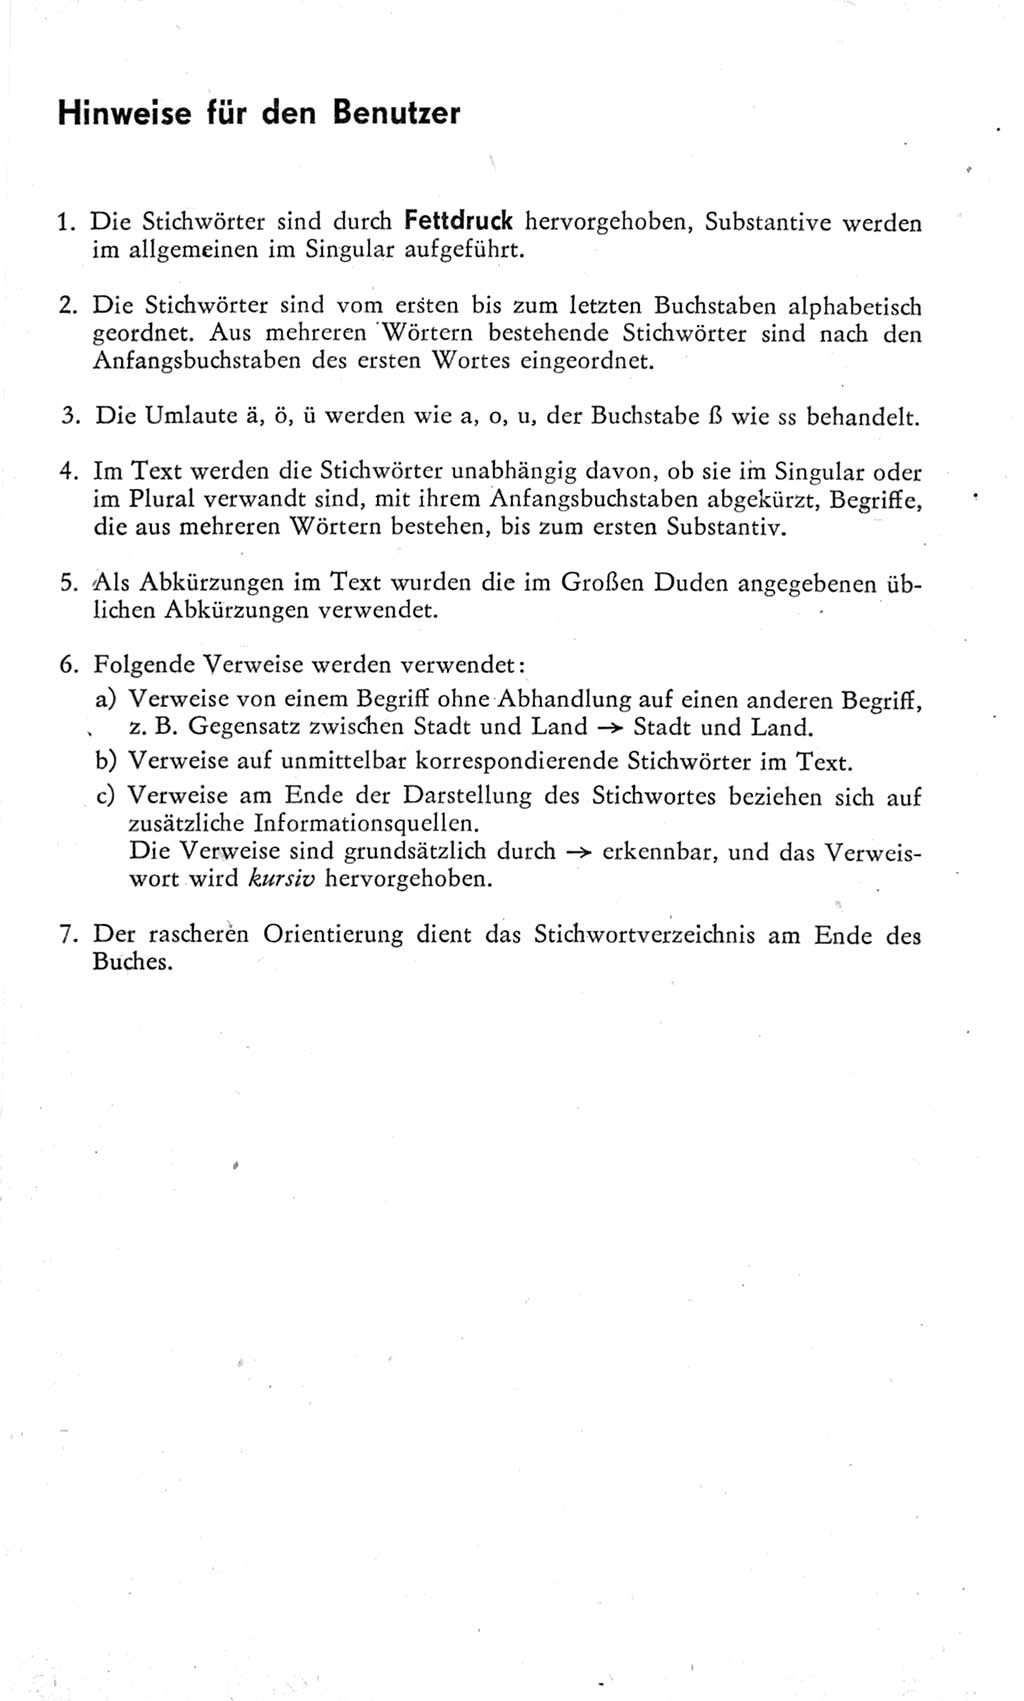 Kleines Wörterbuch der marxistisch-leninistischen Philosophie [Deutsche Demokratische Republik (DDR)] 1975, Seite 7 (Kl. Wb. ML Phil. DDR 1975, S. 7)